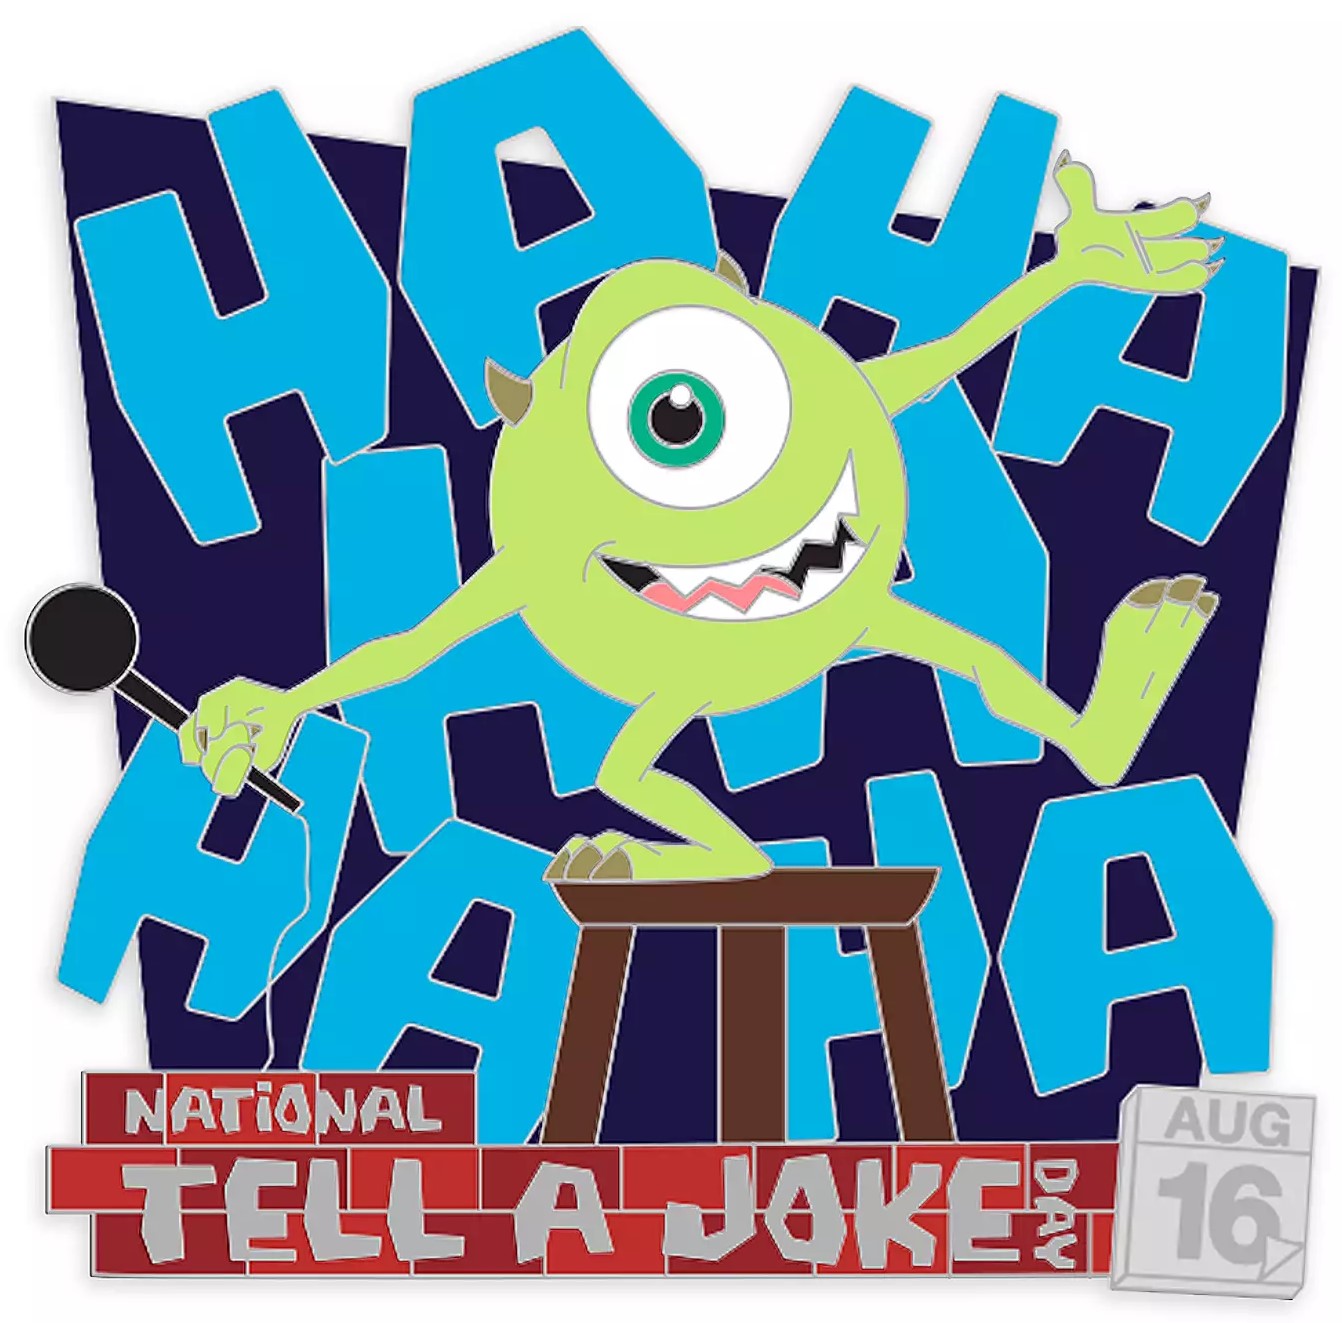 Mike Wazowski Joke Pin Monsters, Inc. National Tell a Joke Day 2020 Limited Edition Stock Photo